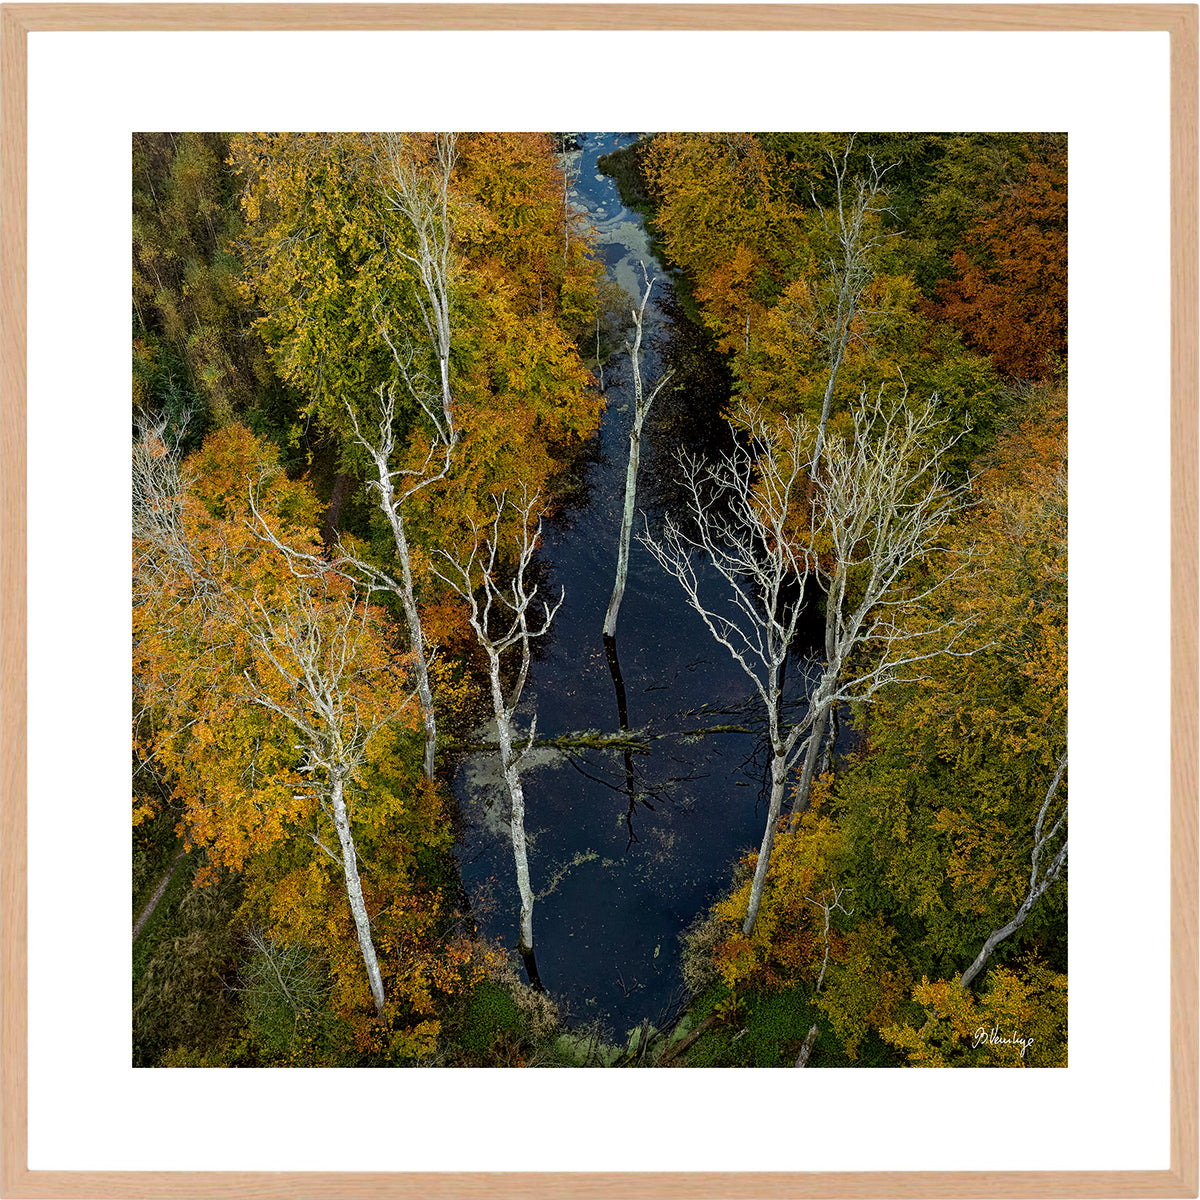 En sø i Marselisborgskoven med 9 udgåede træer som lyser op med deres hvide grene. Omkranset af efterårsfarvede træer.